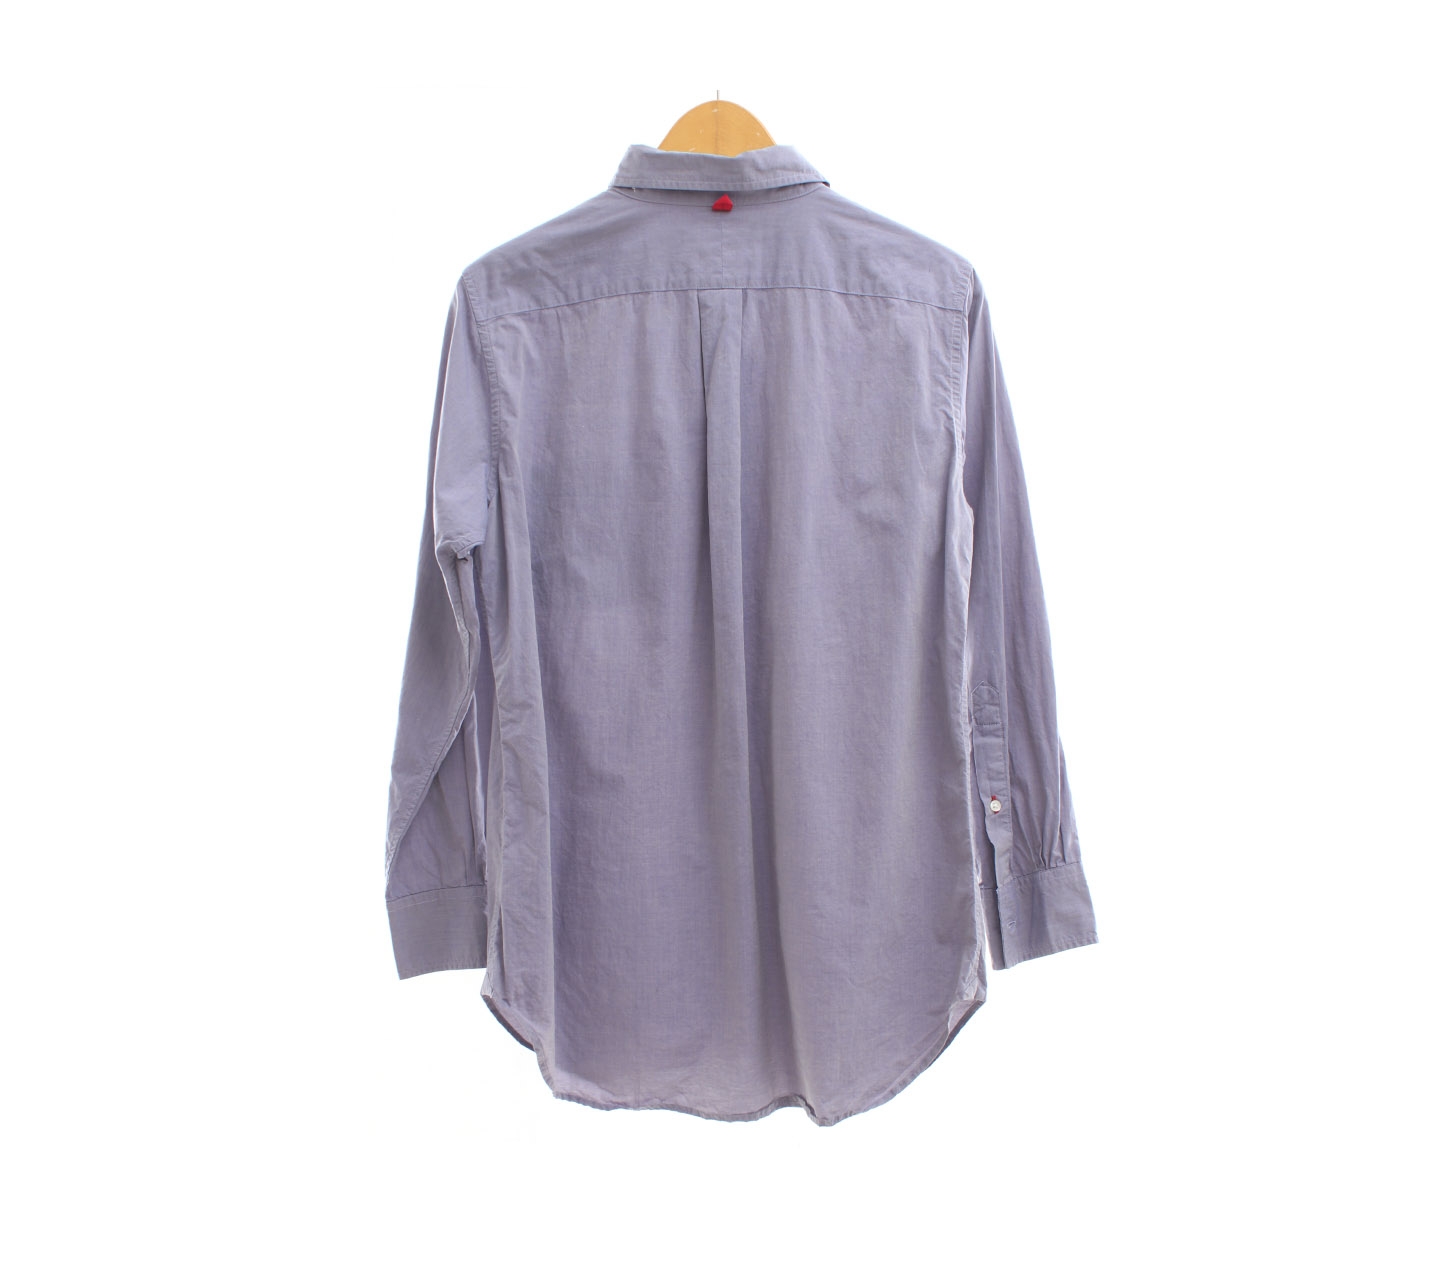 Uniqlo Lilac Shirt